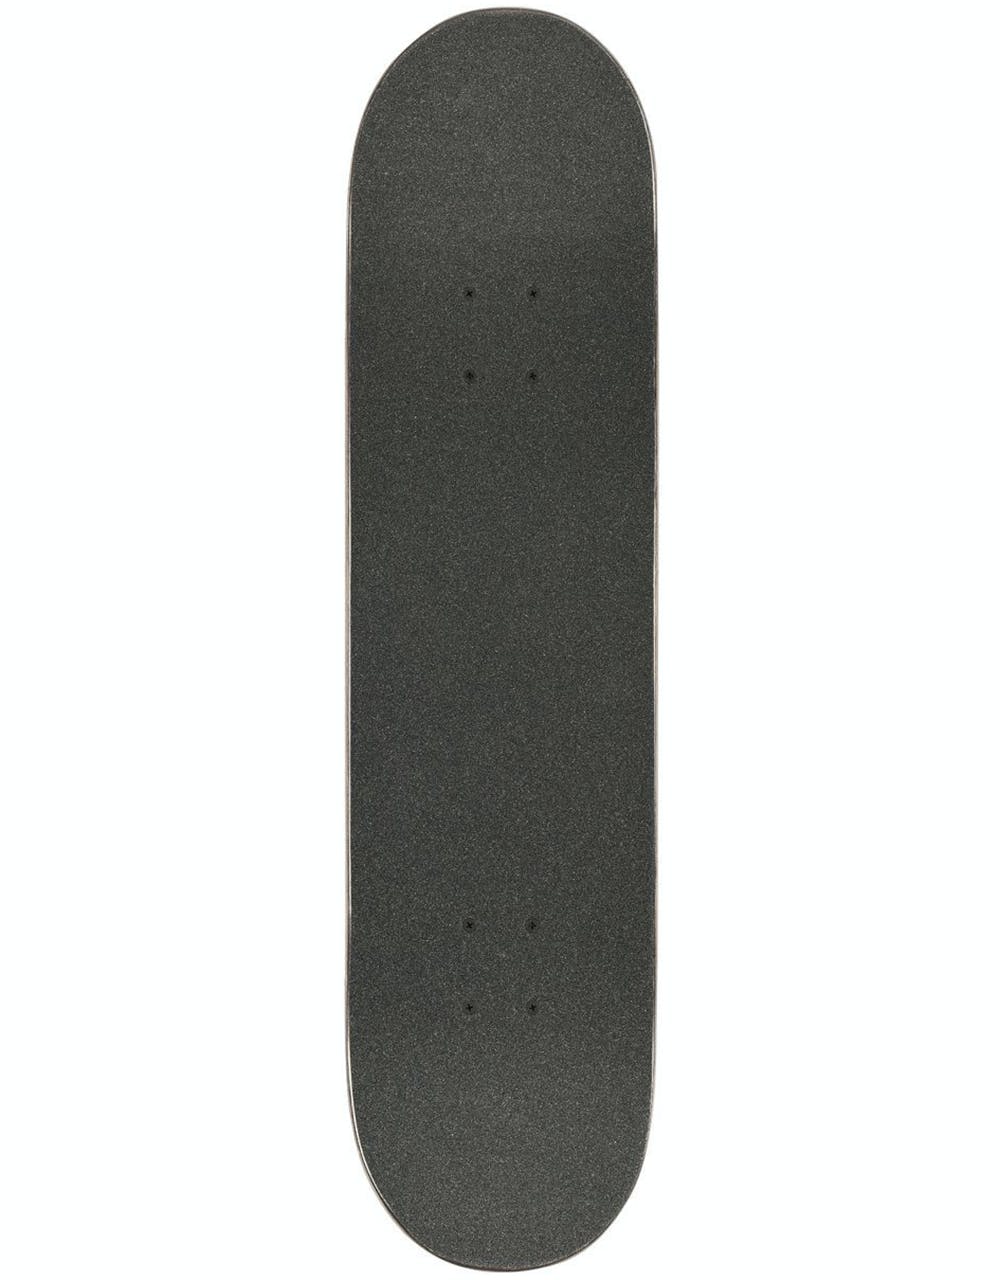 Globe Goodstock Complete Skateboard - 8.125"